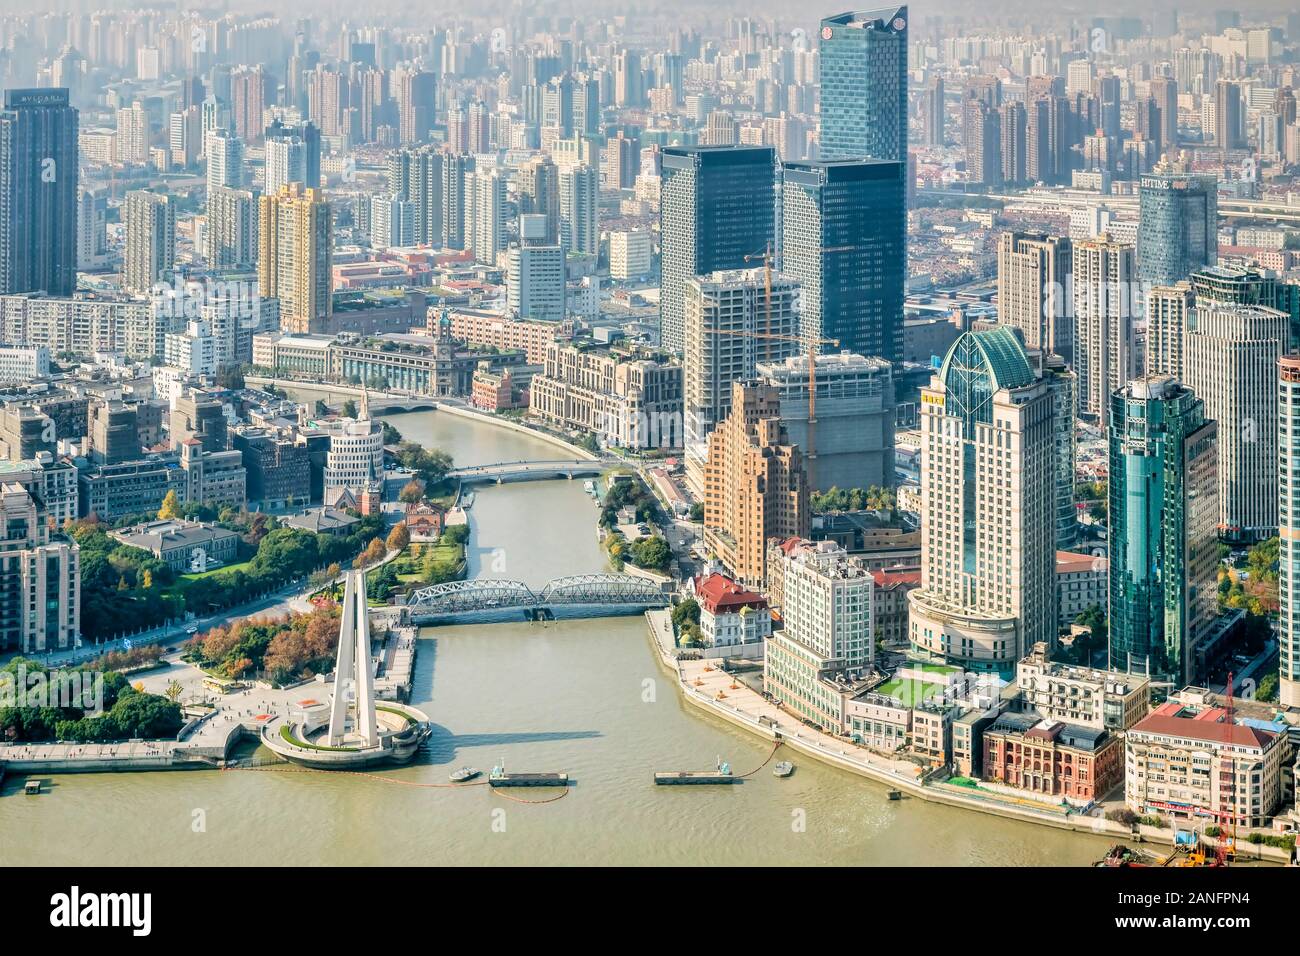 01. Dezember 2018: Shanghai, China - Ansicht von Suzhou Creek am Zusammenfluss mit dem Fluss Huangpu, aus dem Oriental Pearl Tower. Stockfoto